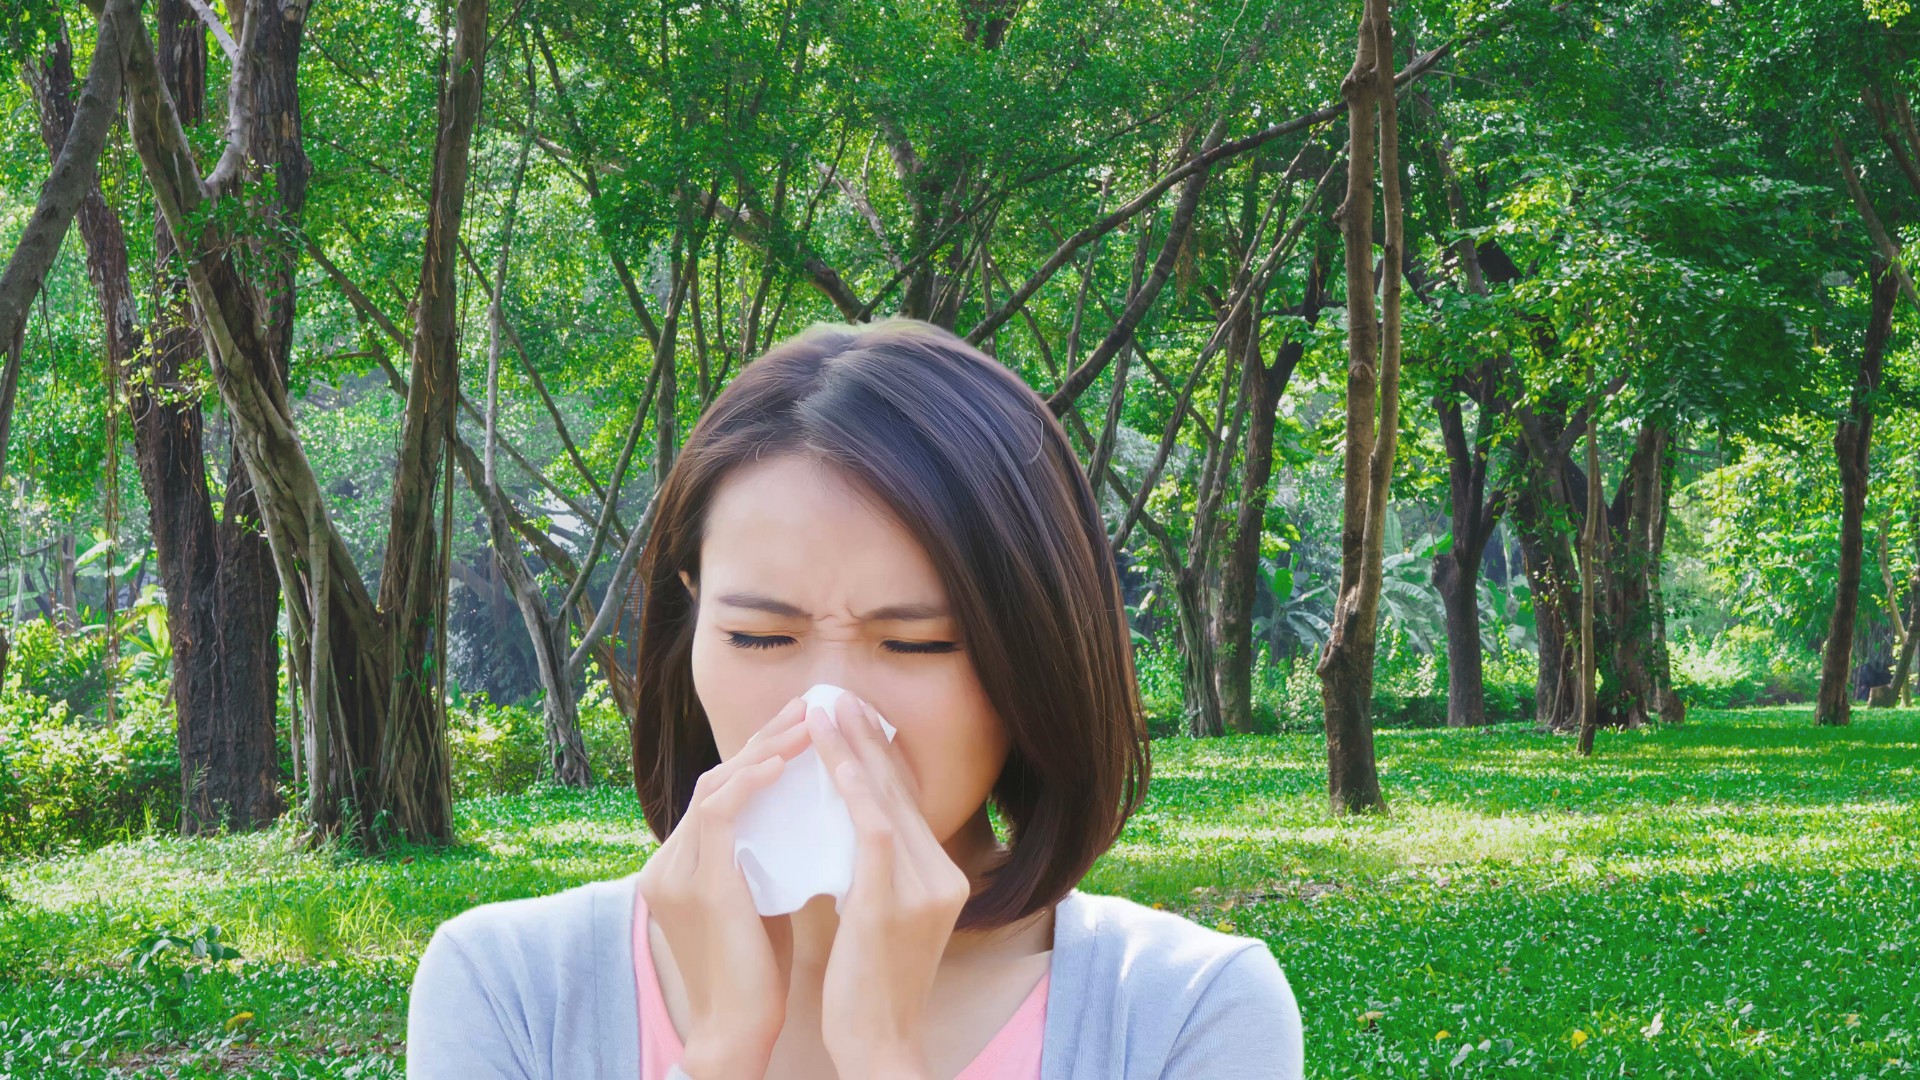 How to combat pollen allergies?